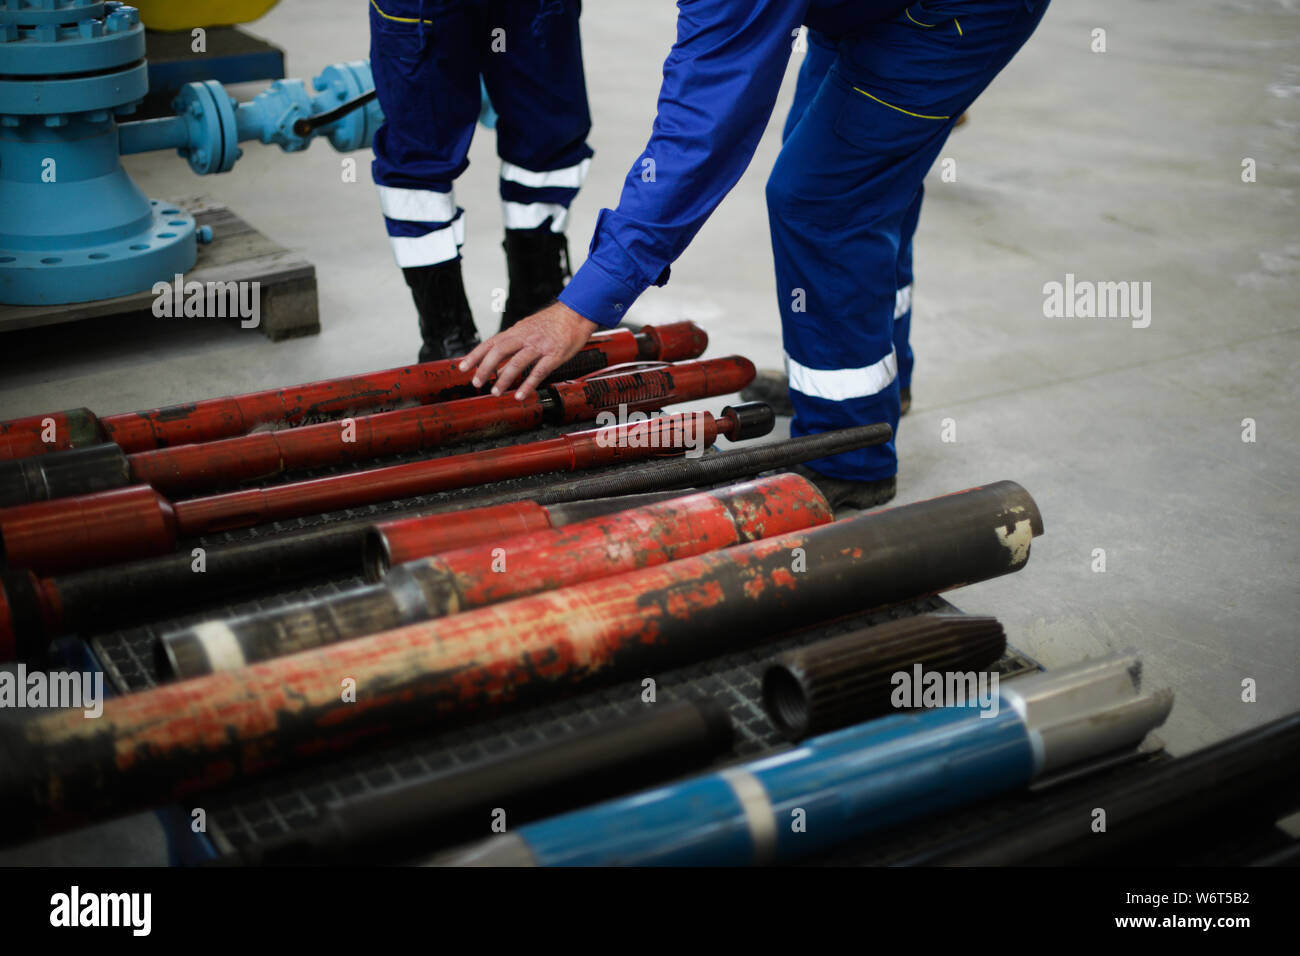 Details mit den Händen eines Arbeitnehmers berühren Alt und rostig schwere Eisen Bohrgeräte in der Öl- und Gasindustrie verwendet Stockfoto